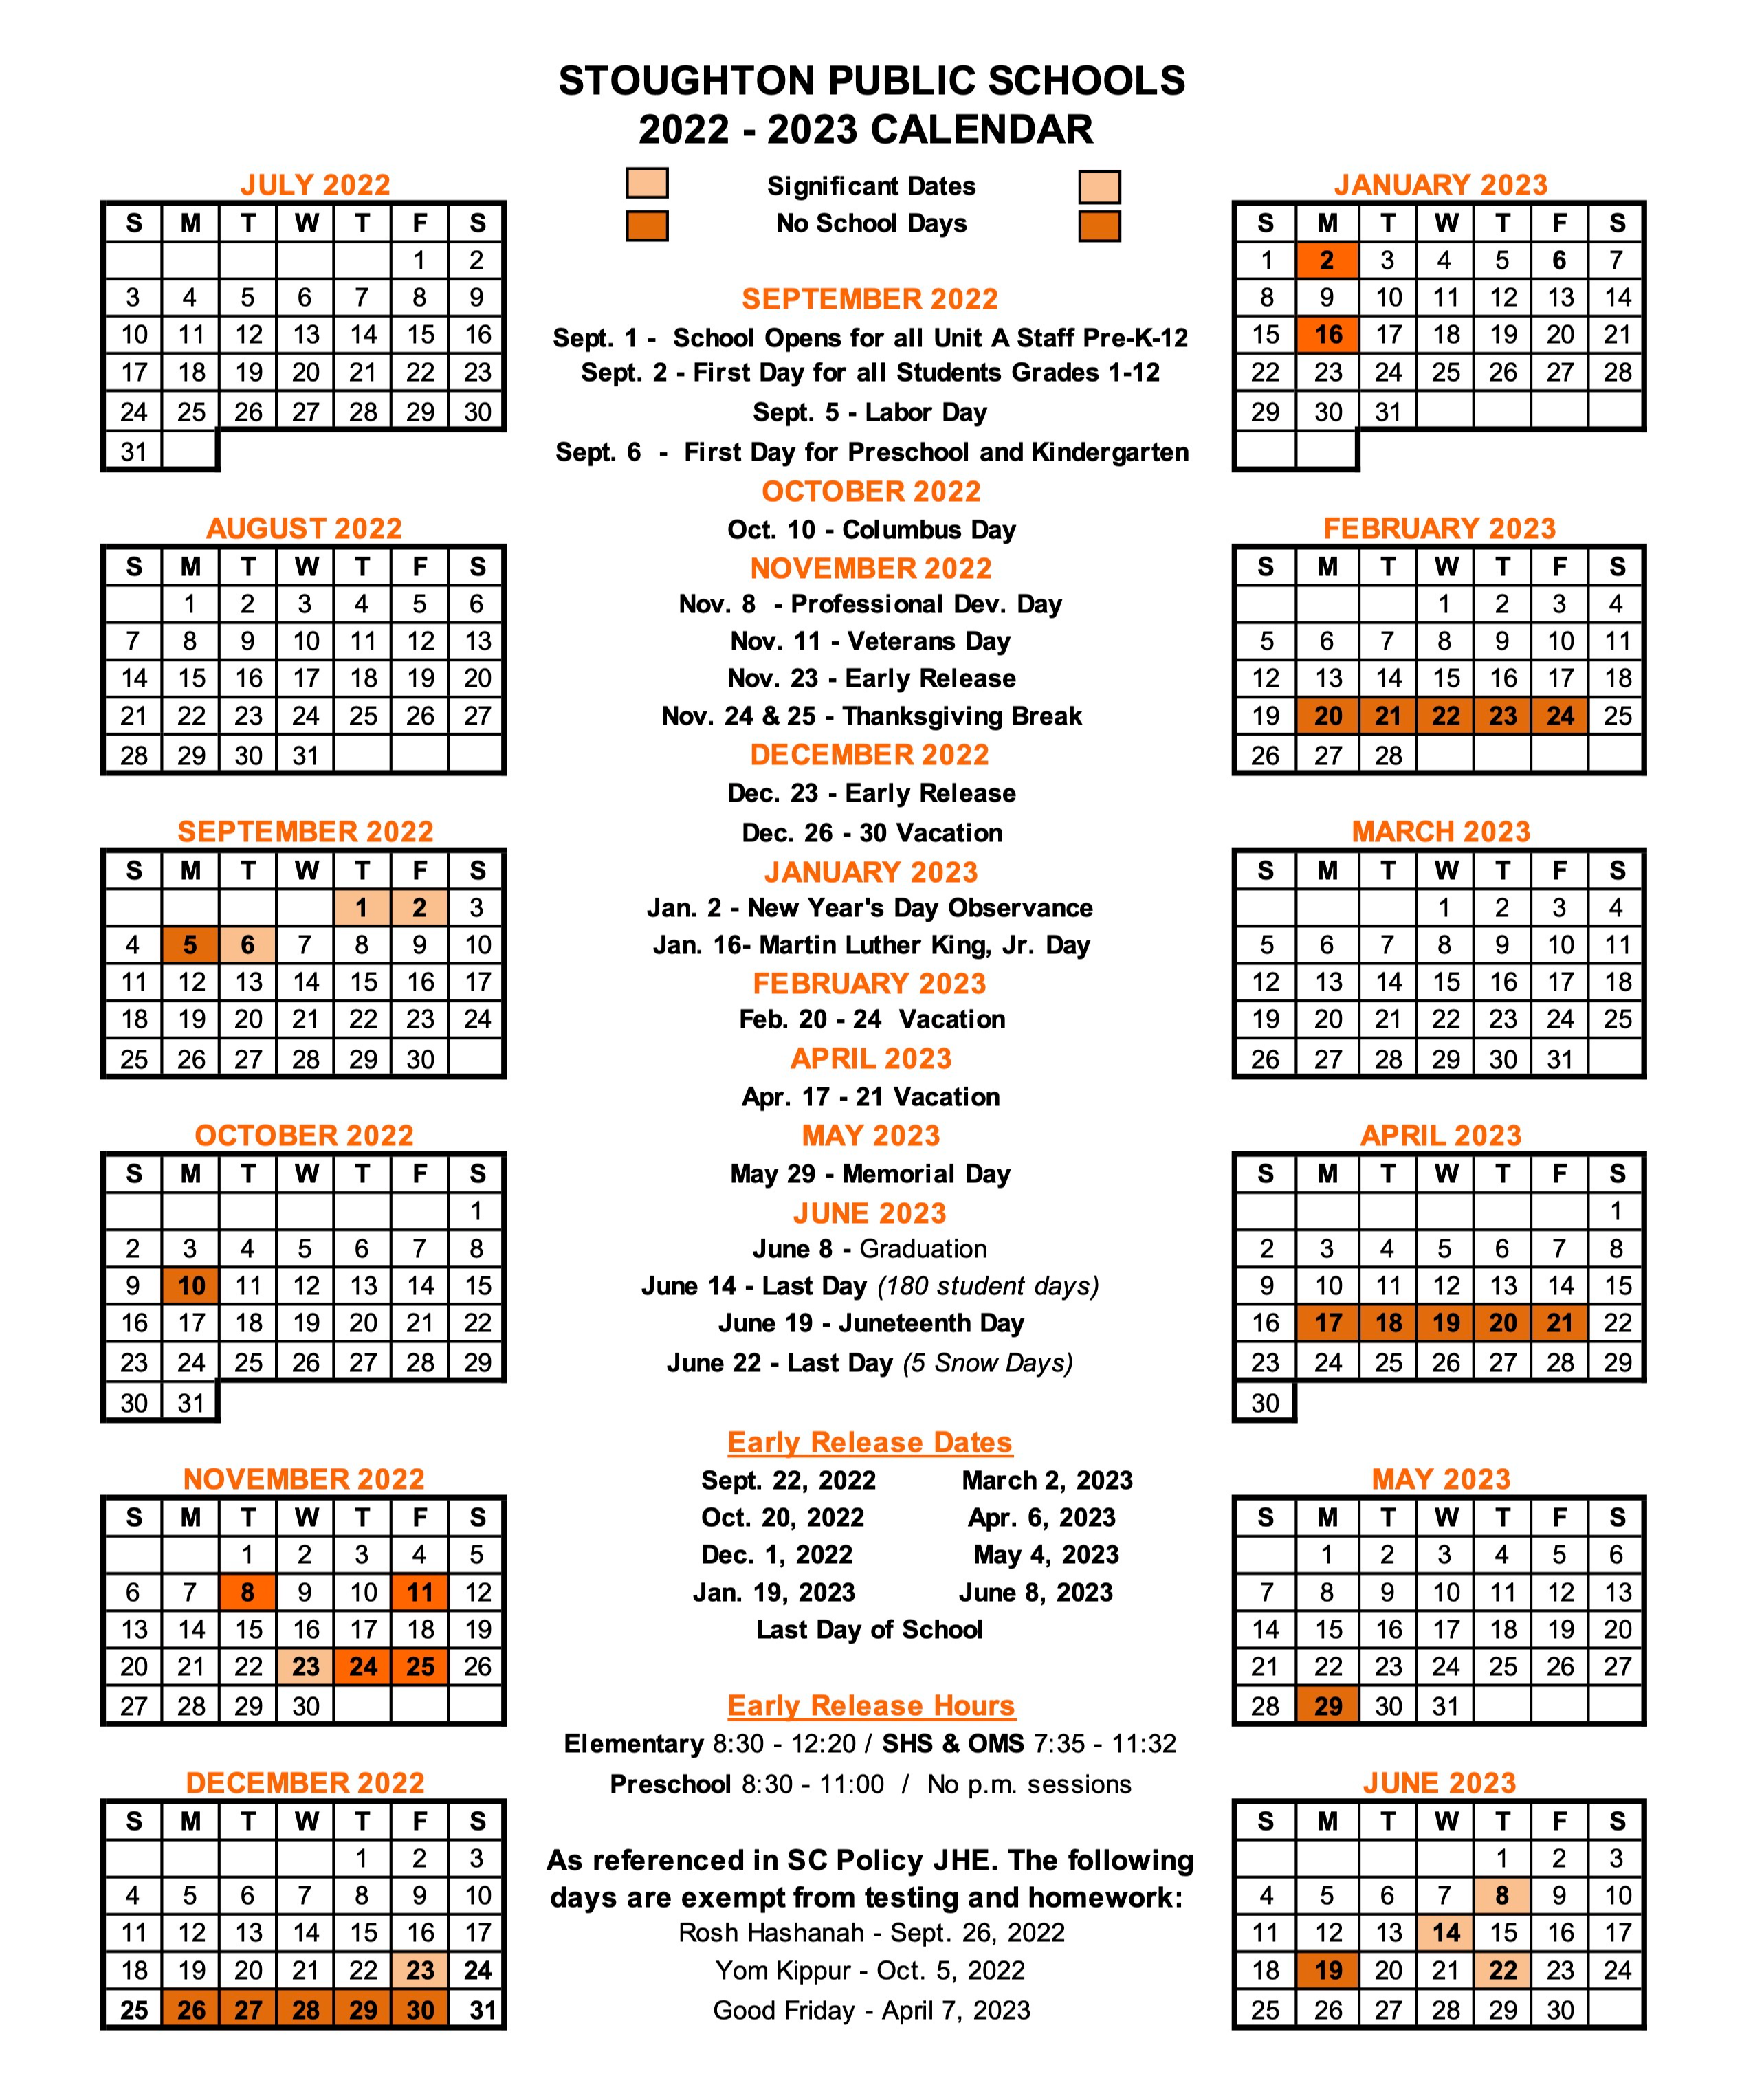 SPS 2022-2023 Calendar